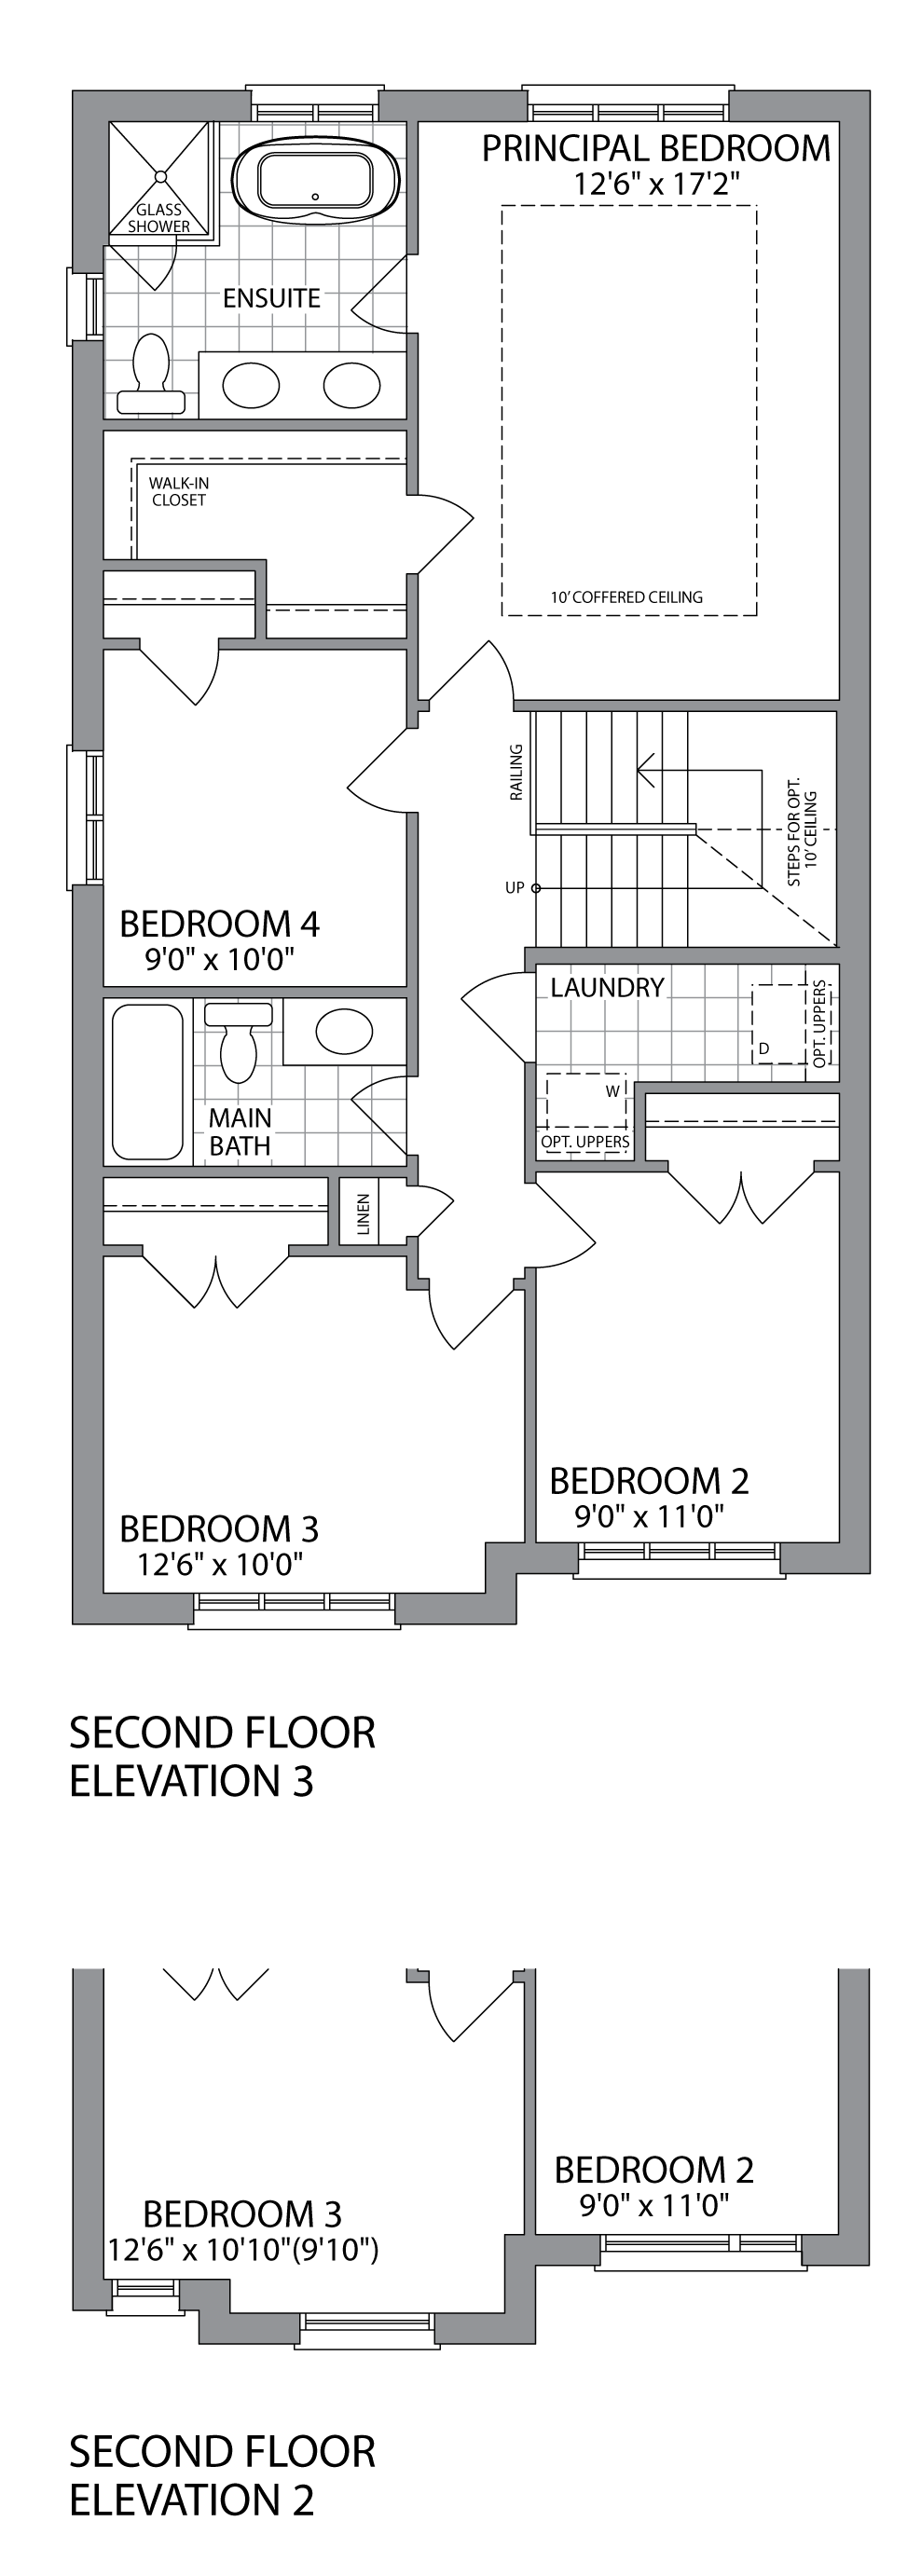 The ACADIAN Second Floor